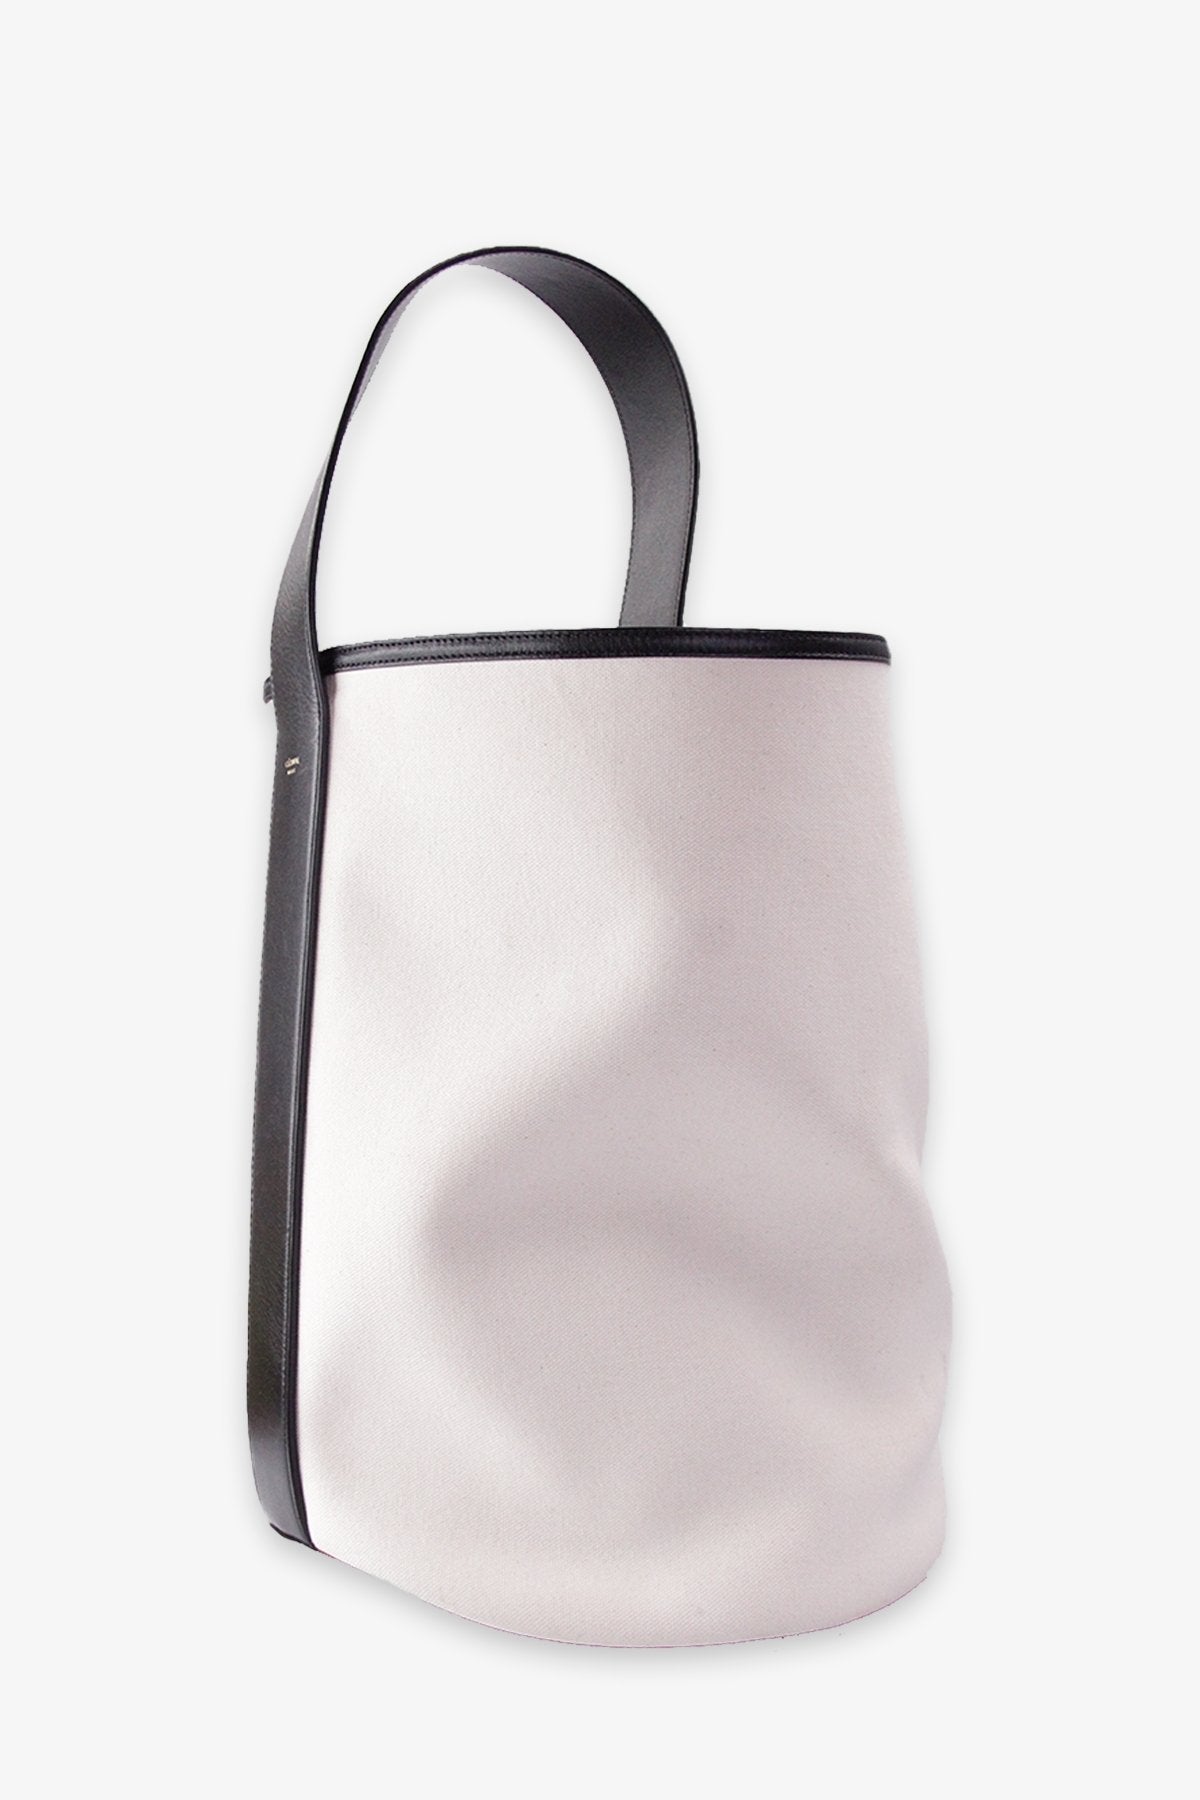 Celine Beige Canvas Shoulder Bag with Black Leather Strap - shop-olivia.com